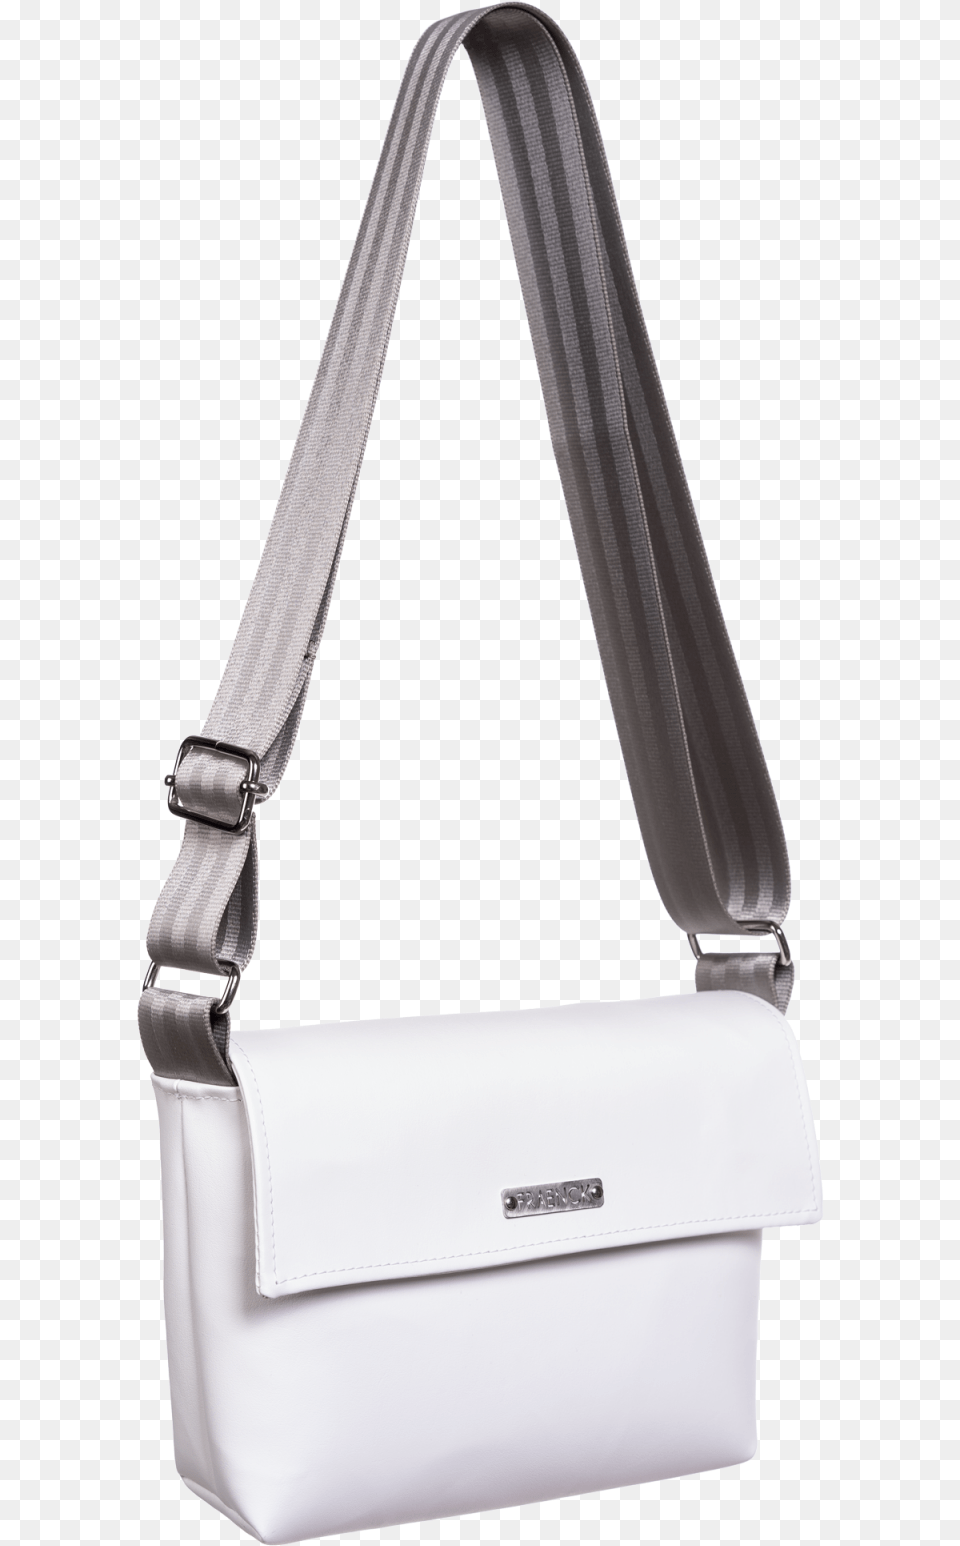 Kris Snow White Front Shoulder Bag, Accessories, Handbag, Purse Free Transparent Png